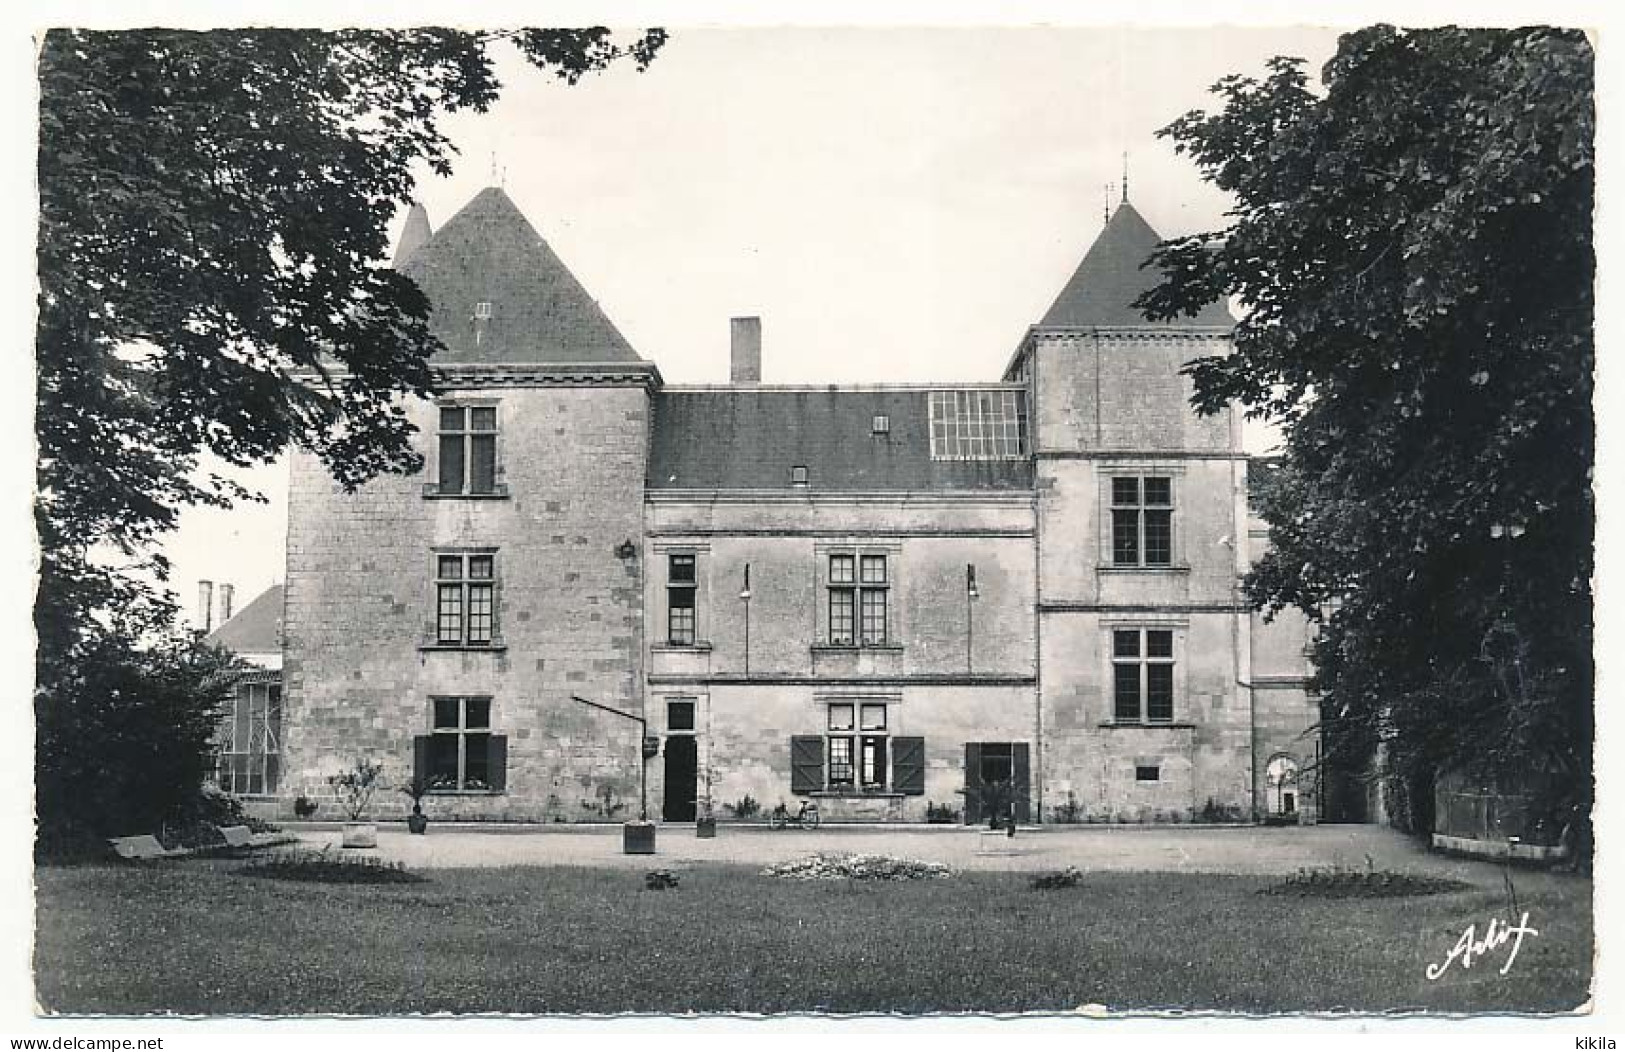 CPSM Dentelée 9 X 14 Deux-Sèvres COULONGES Hôtel De Ville (Côté Parc) - Le Château - Coulonges-sur-l'Autize